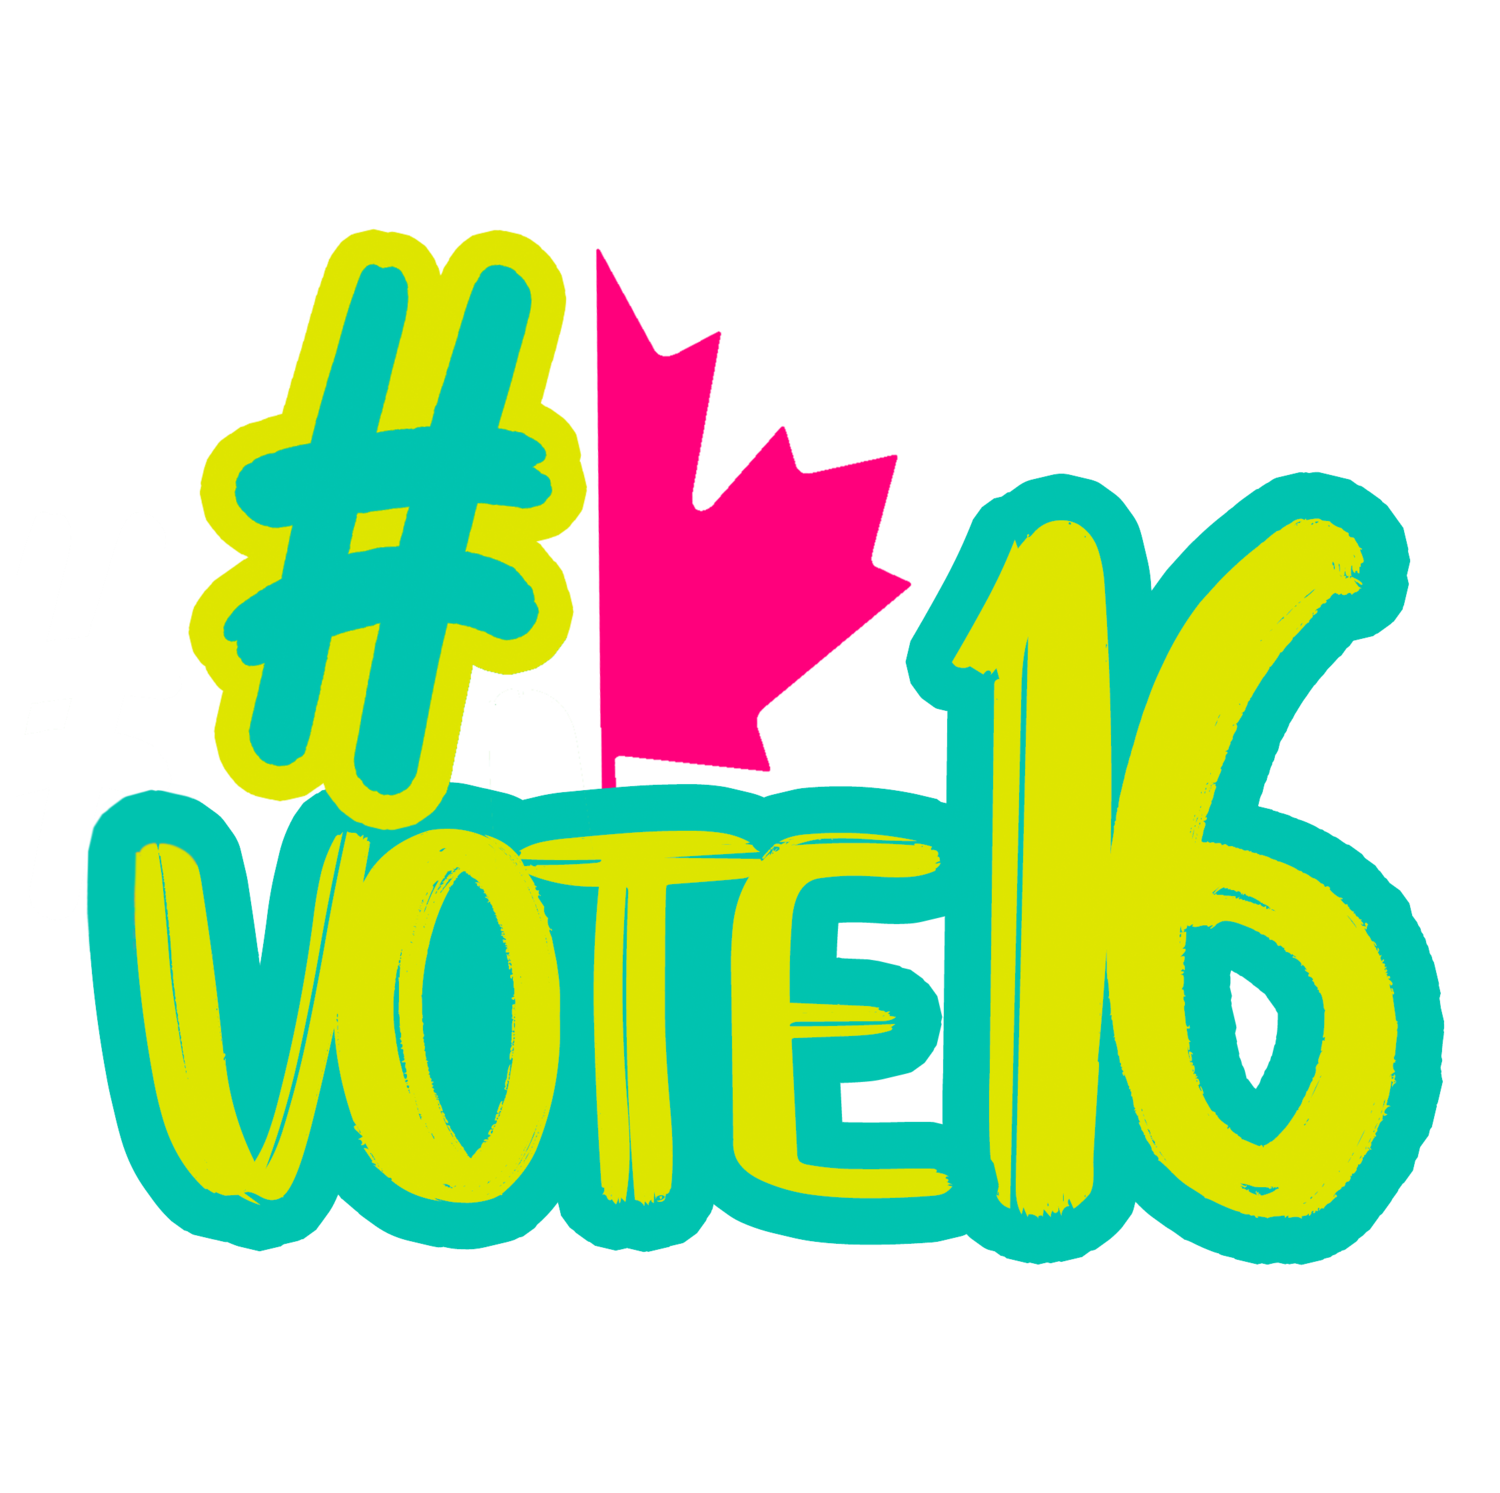 #Vote16 Canada